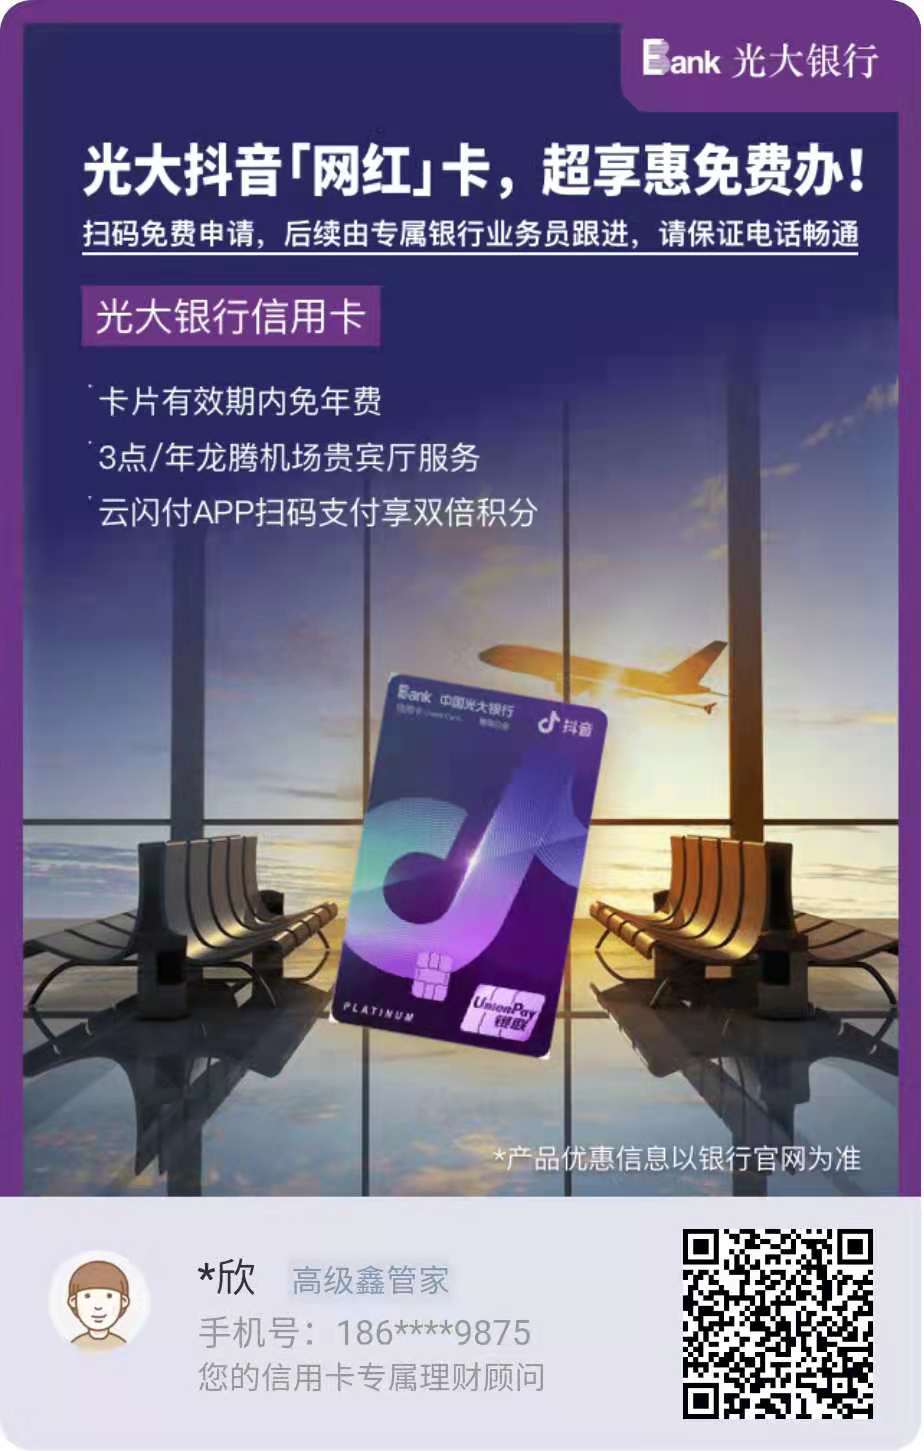 唐县光大银行抖音信用卡申请办理 卡片有效期内免年费